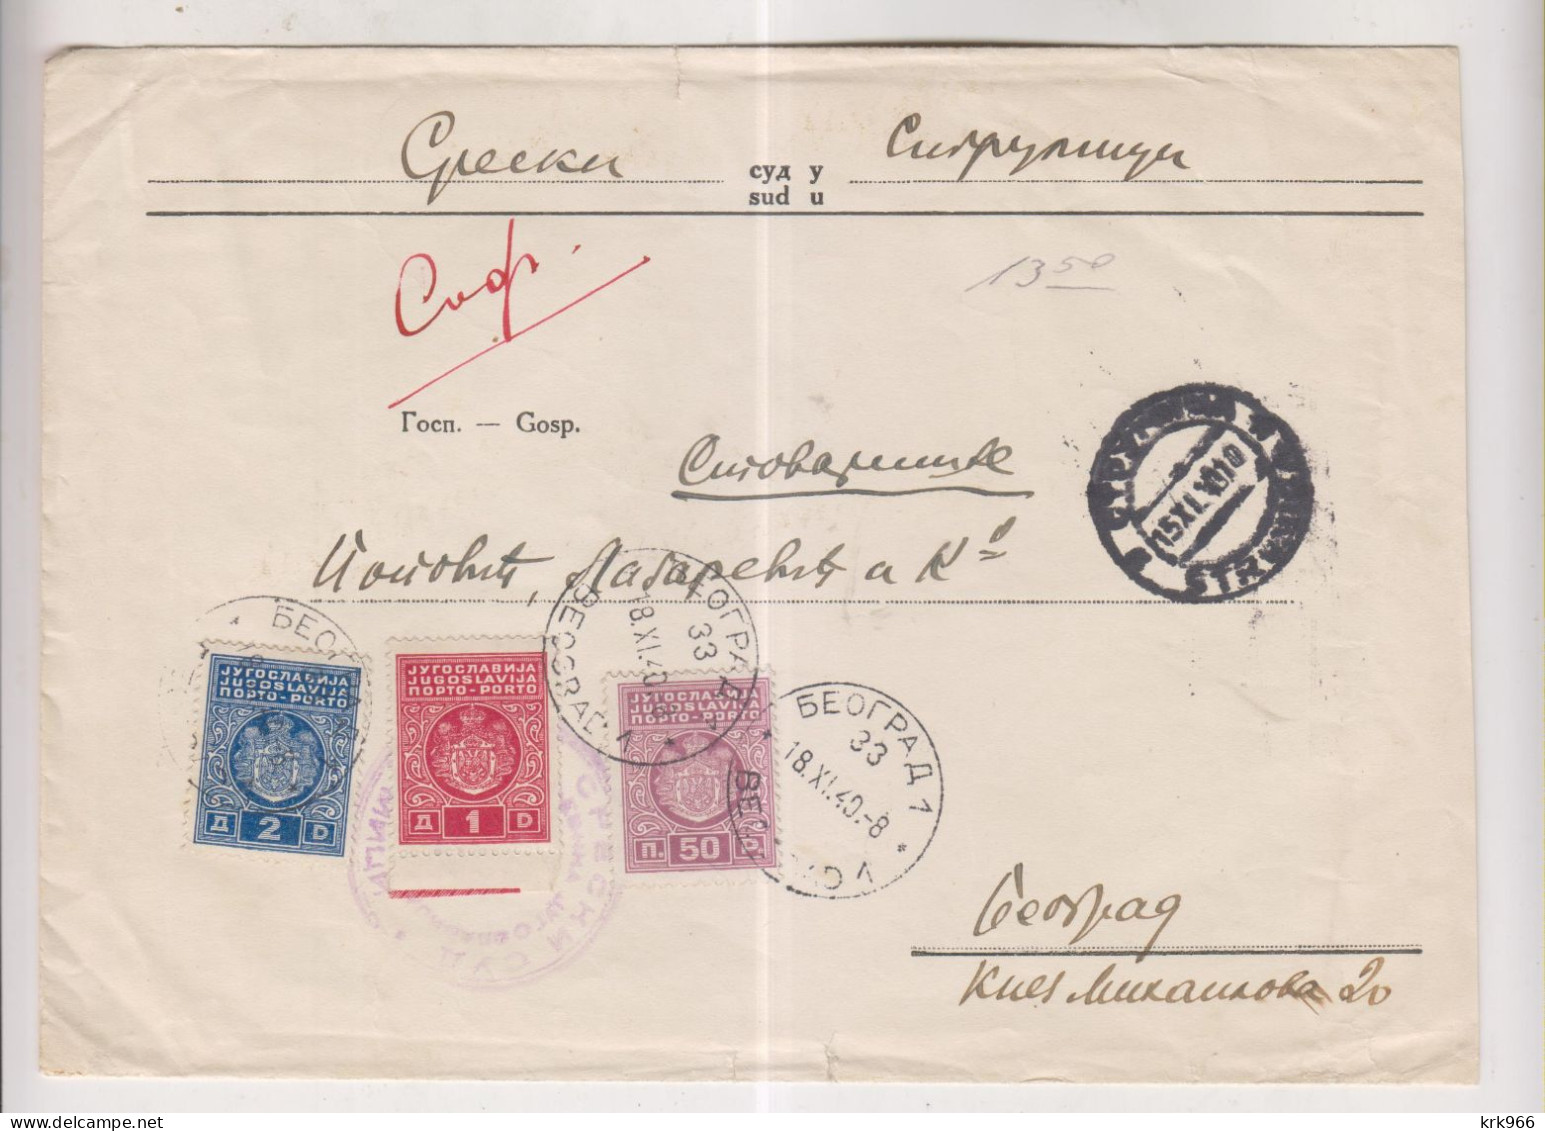 YUGOSLAVIA,1940 SURDULICA Nice Official Cover To Beograd Postage Due - Briefe U. Dokumente